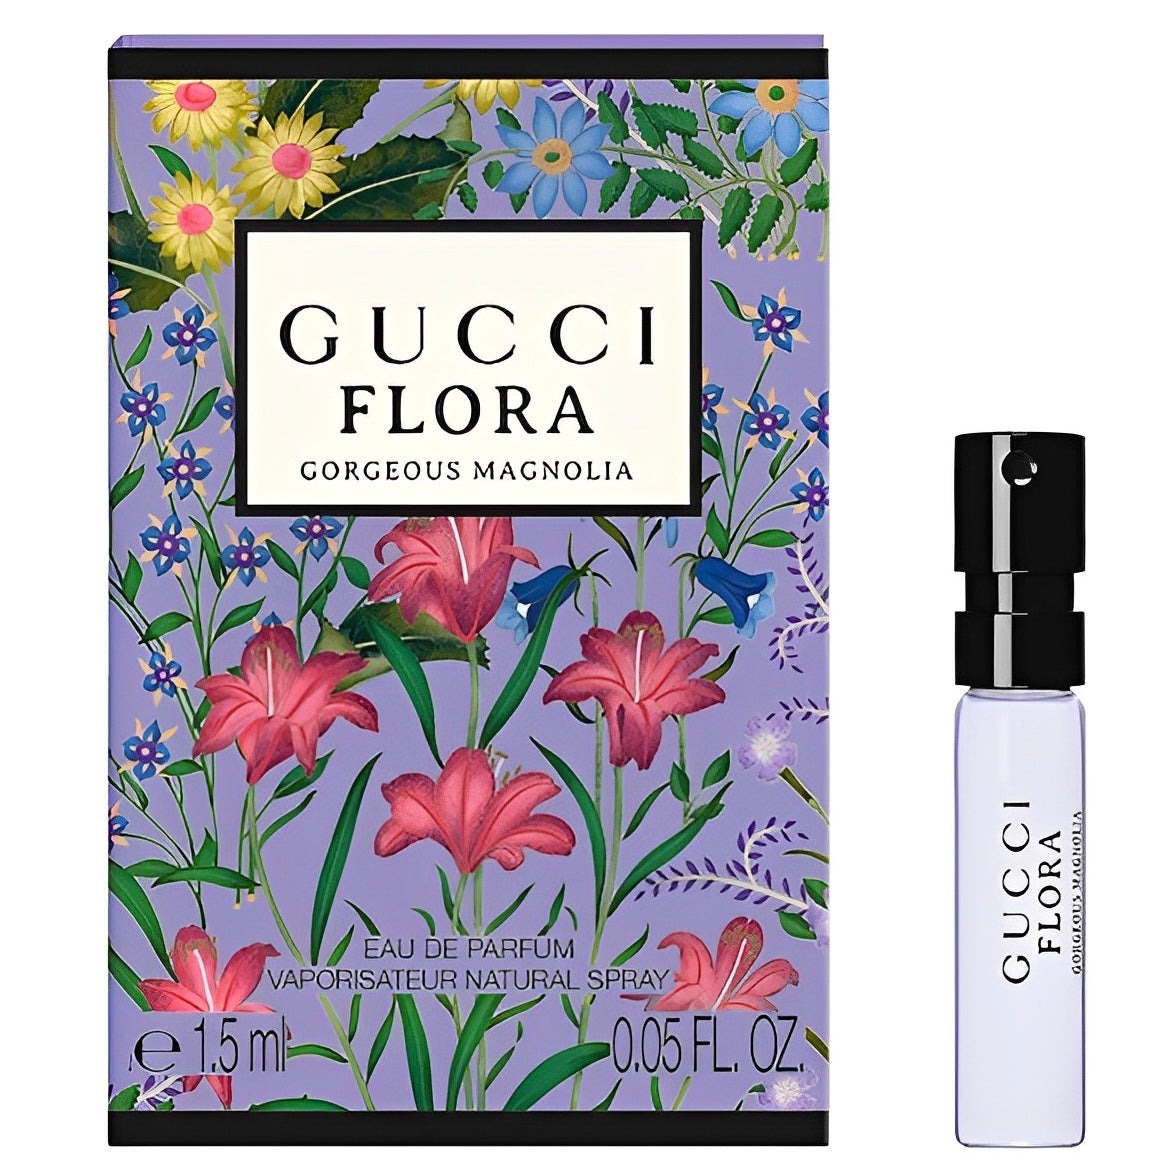 Flora Gorgeous Magnolia Eau de Parfum Sample-Gucci